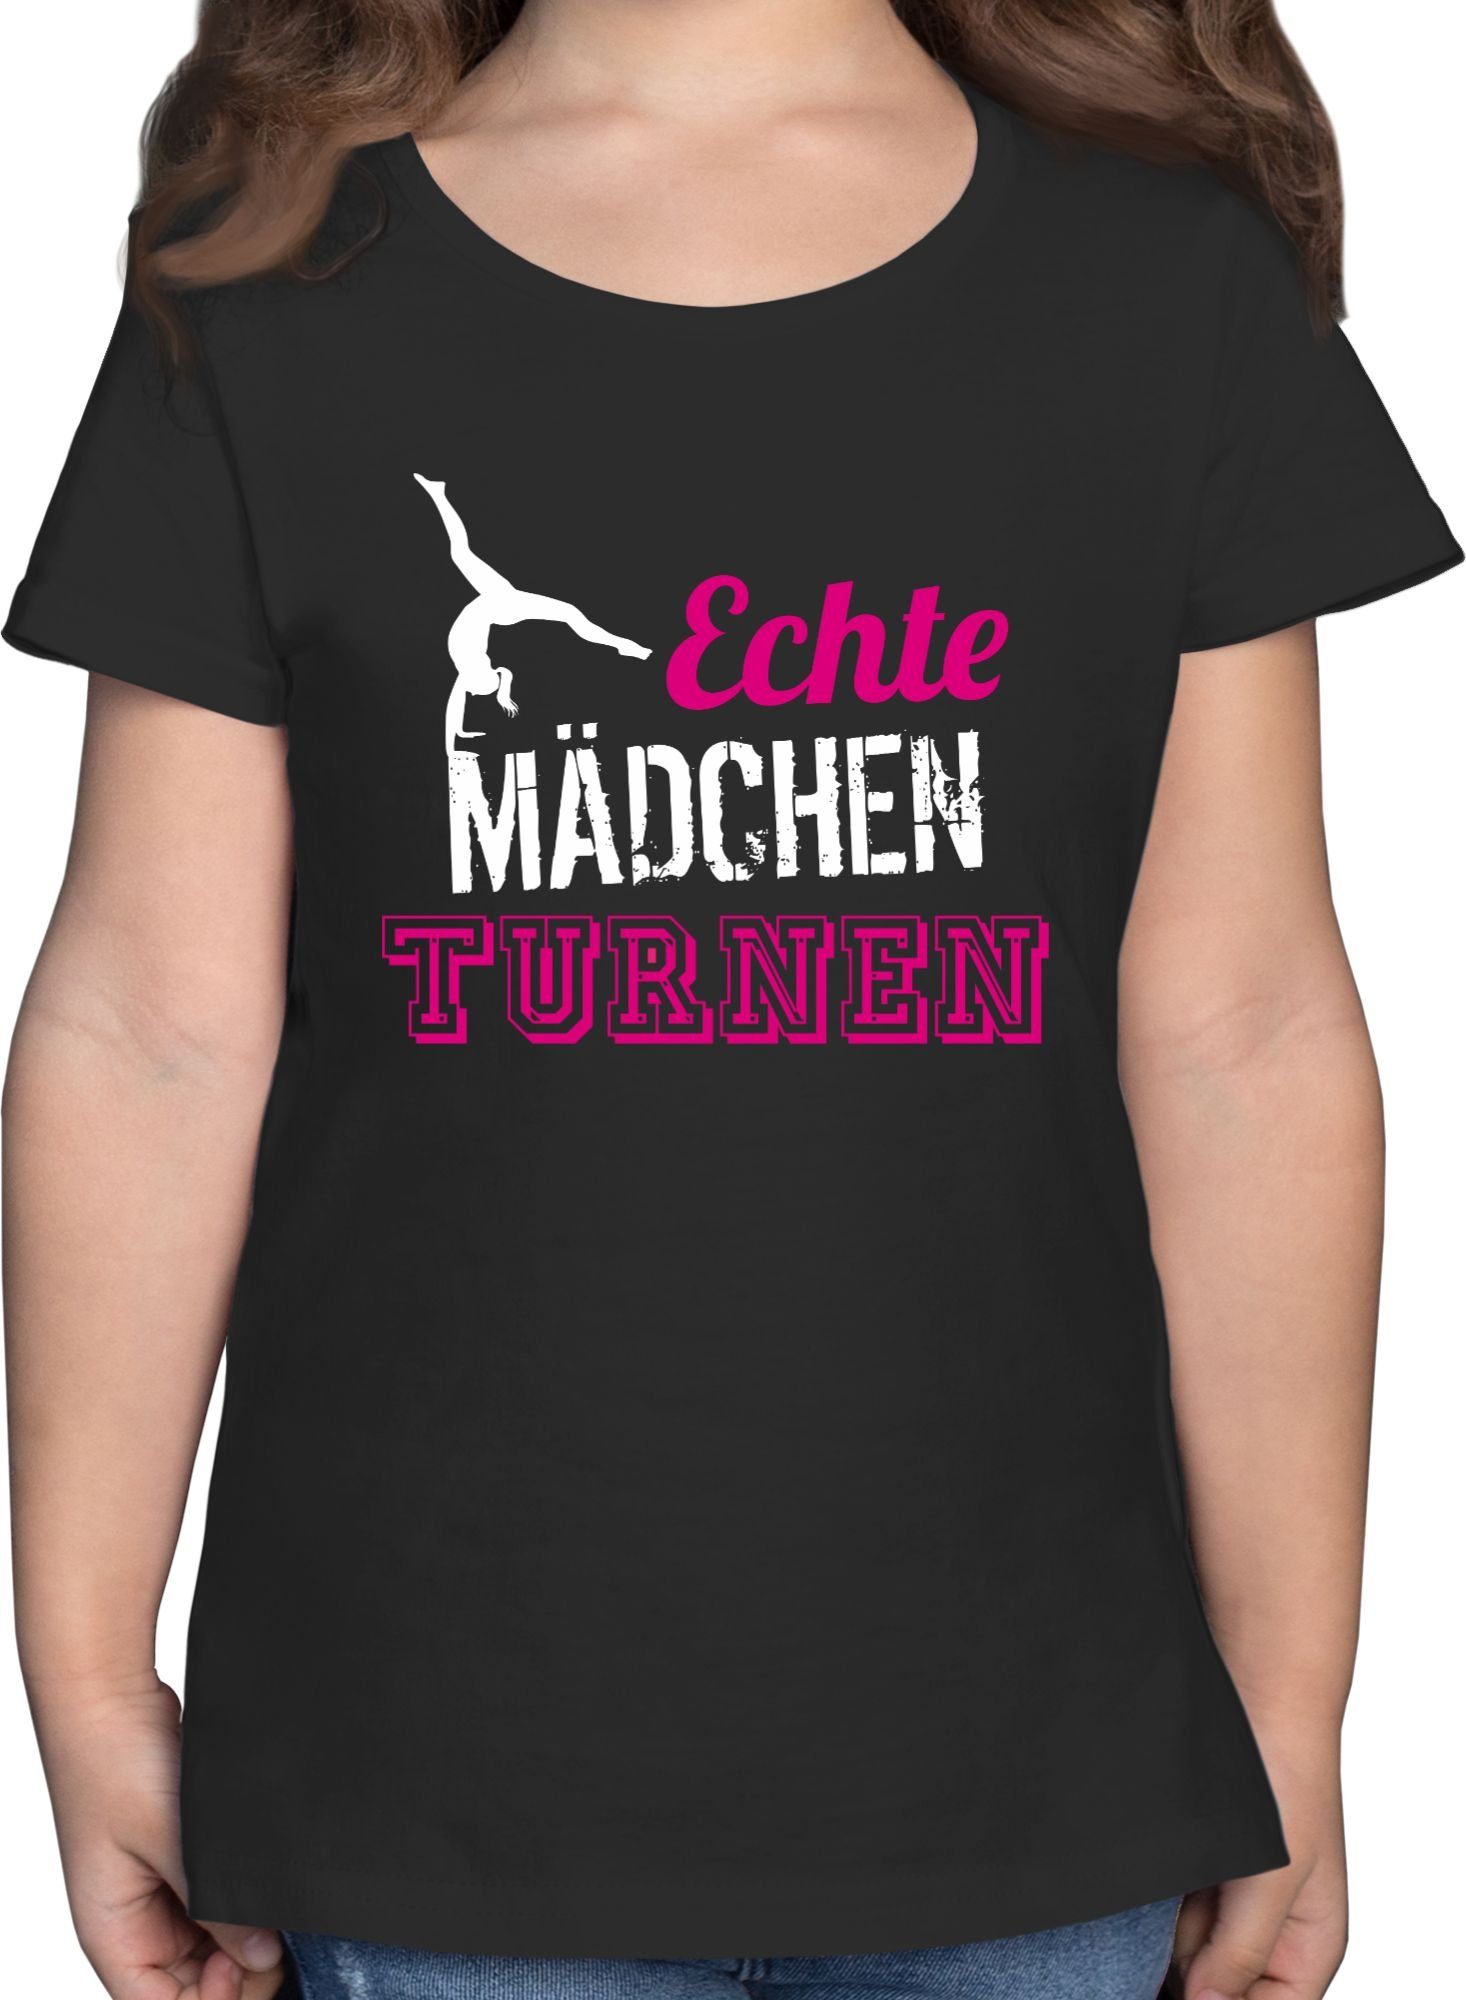 Turnerin Geschenk - Kinder Kleidung T-Shirt Schwarz Sport Mädchen Shirtracer 1 turnen Echte